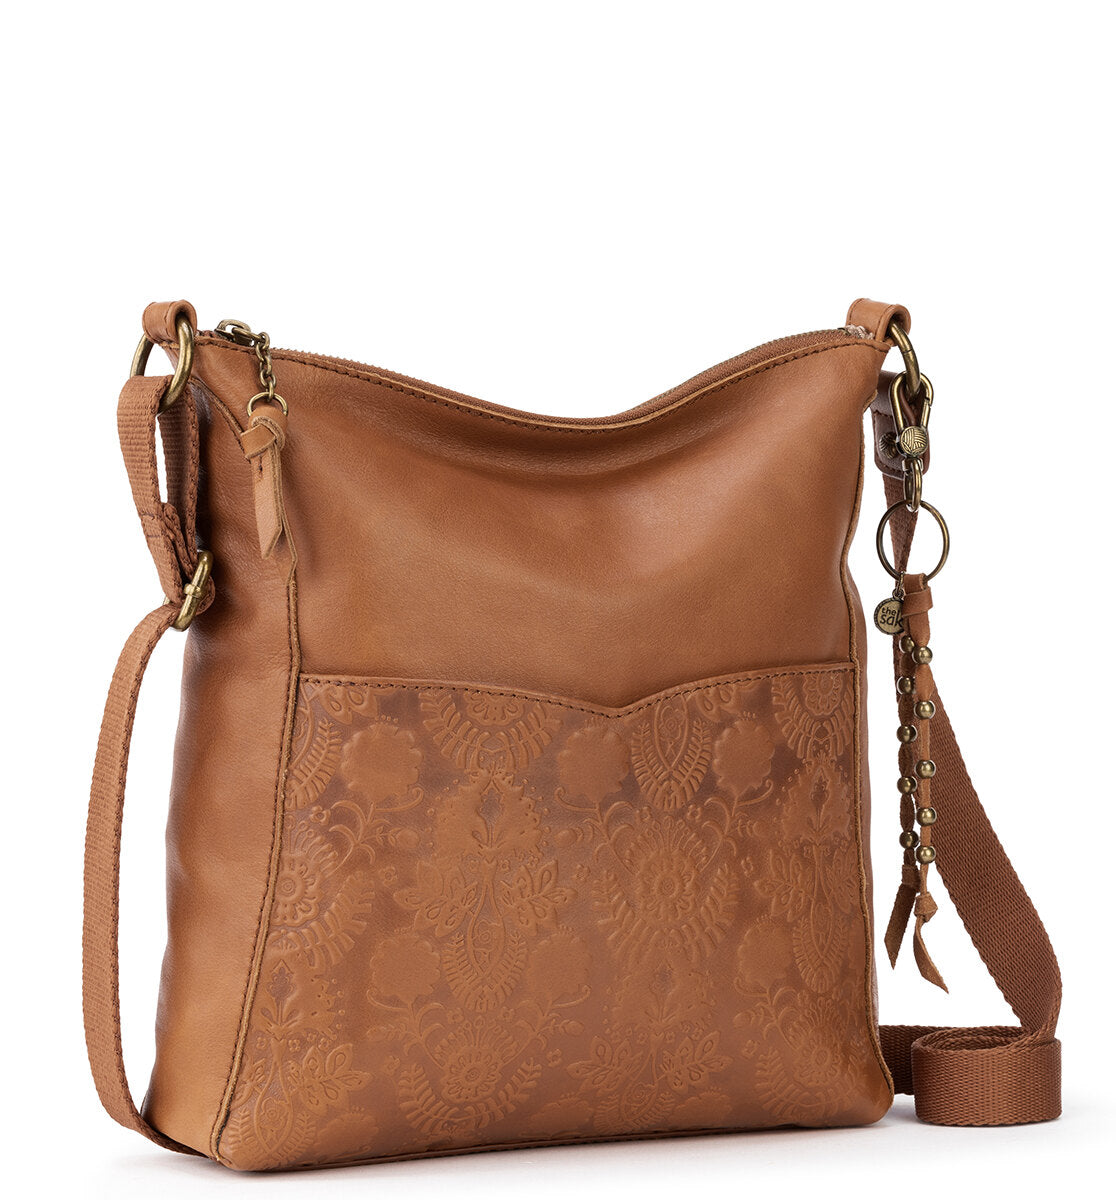 The Sak Tooled Leather Shoulder Bag Purse Brown Floral VGUC | eBay